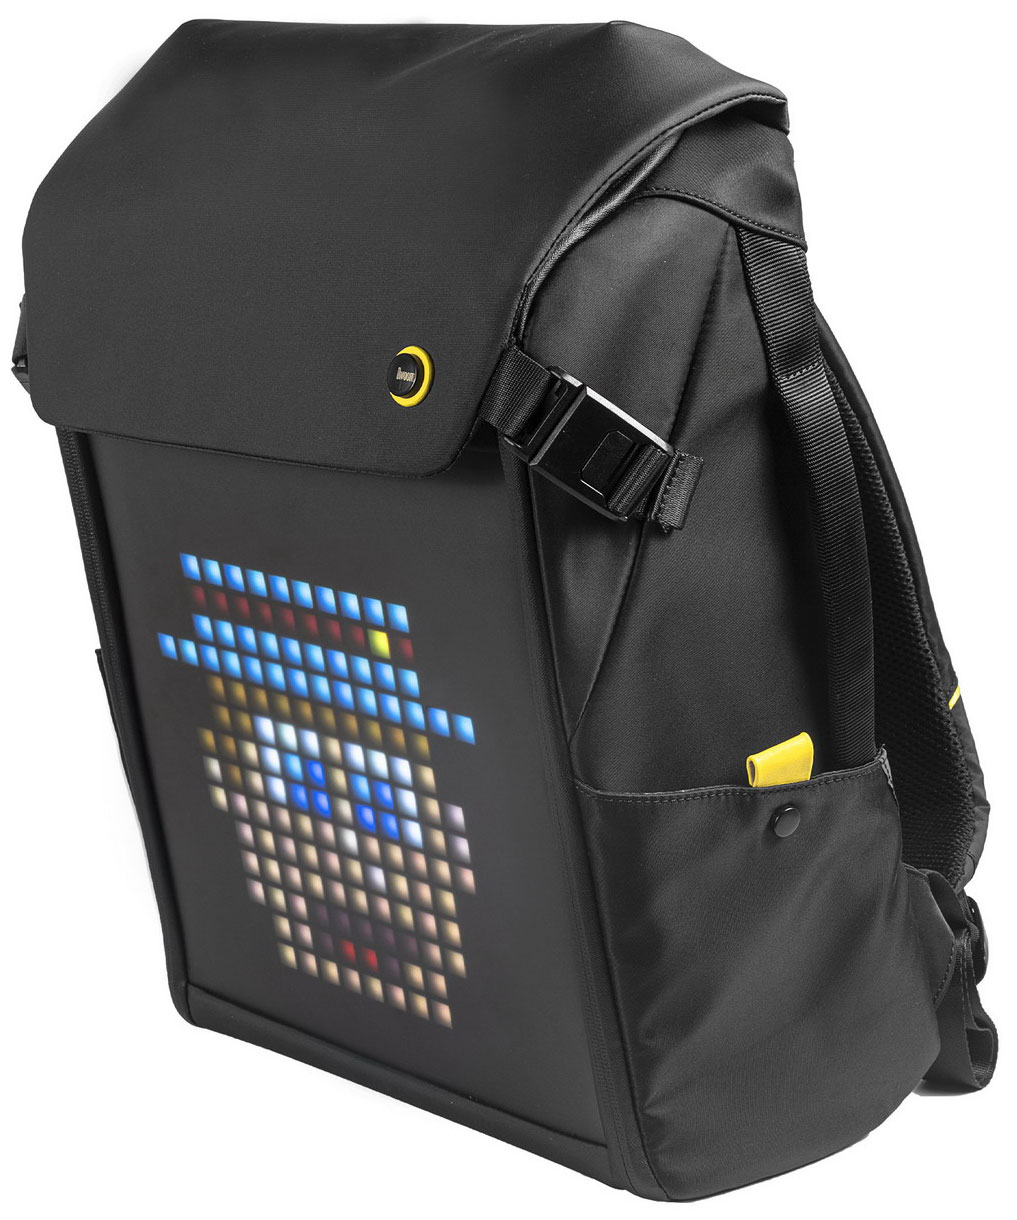 Рюкзак с пиксельным LED-экраном Divoom M рюкзак с пиксельным led экраном divoom m